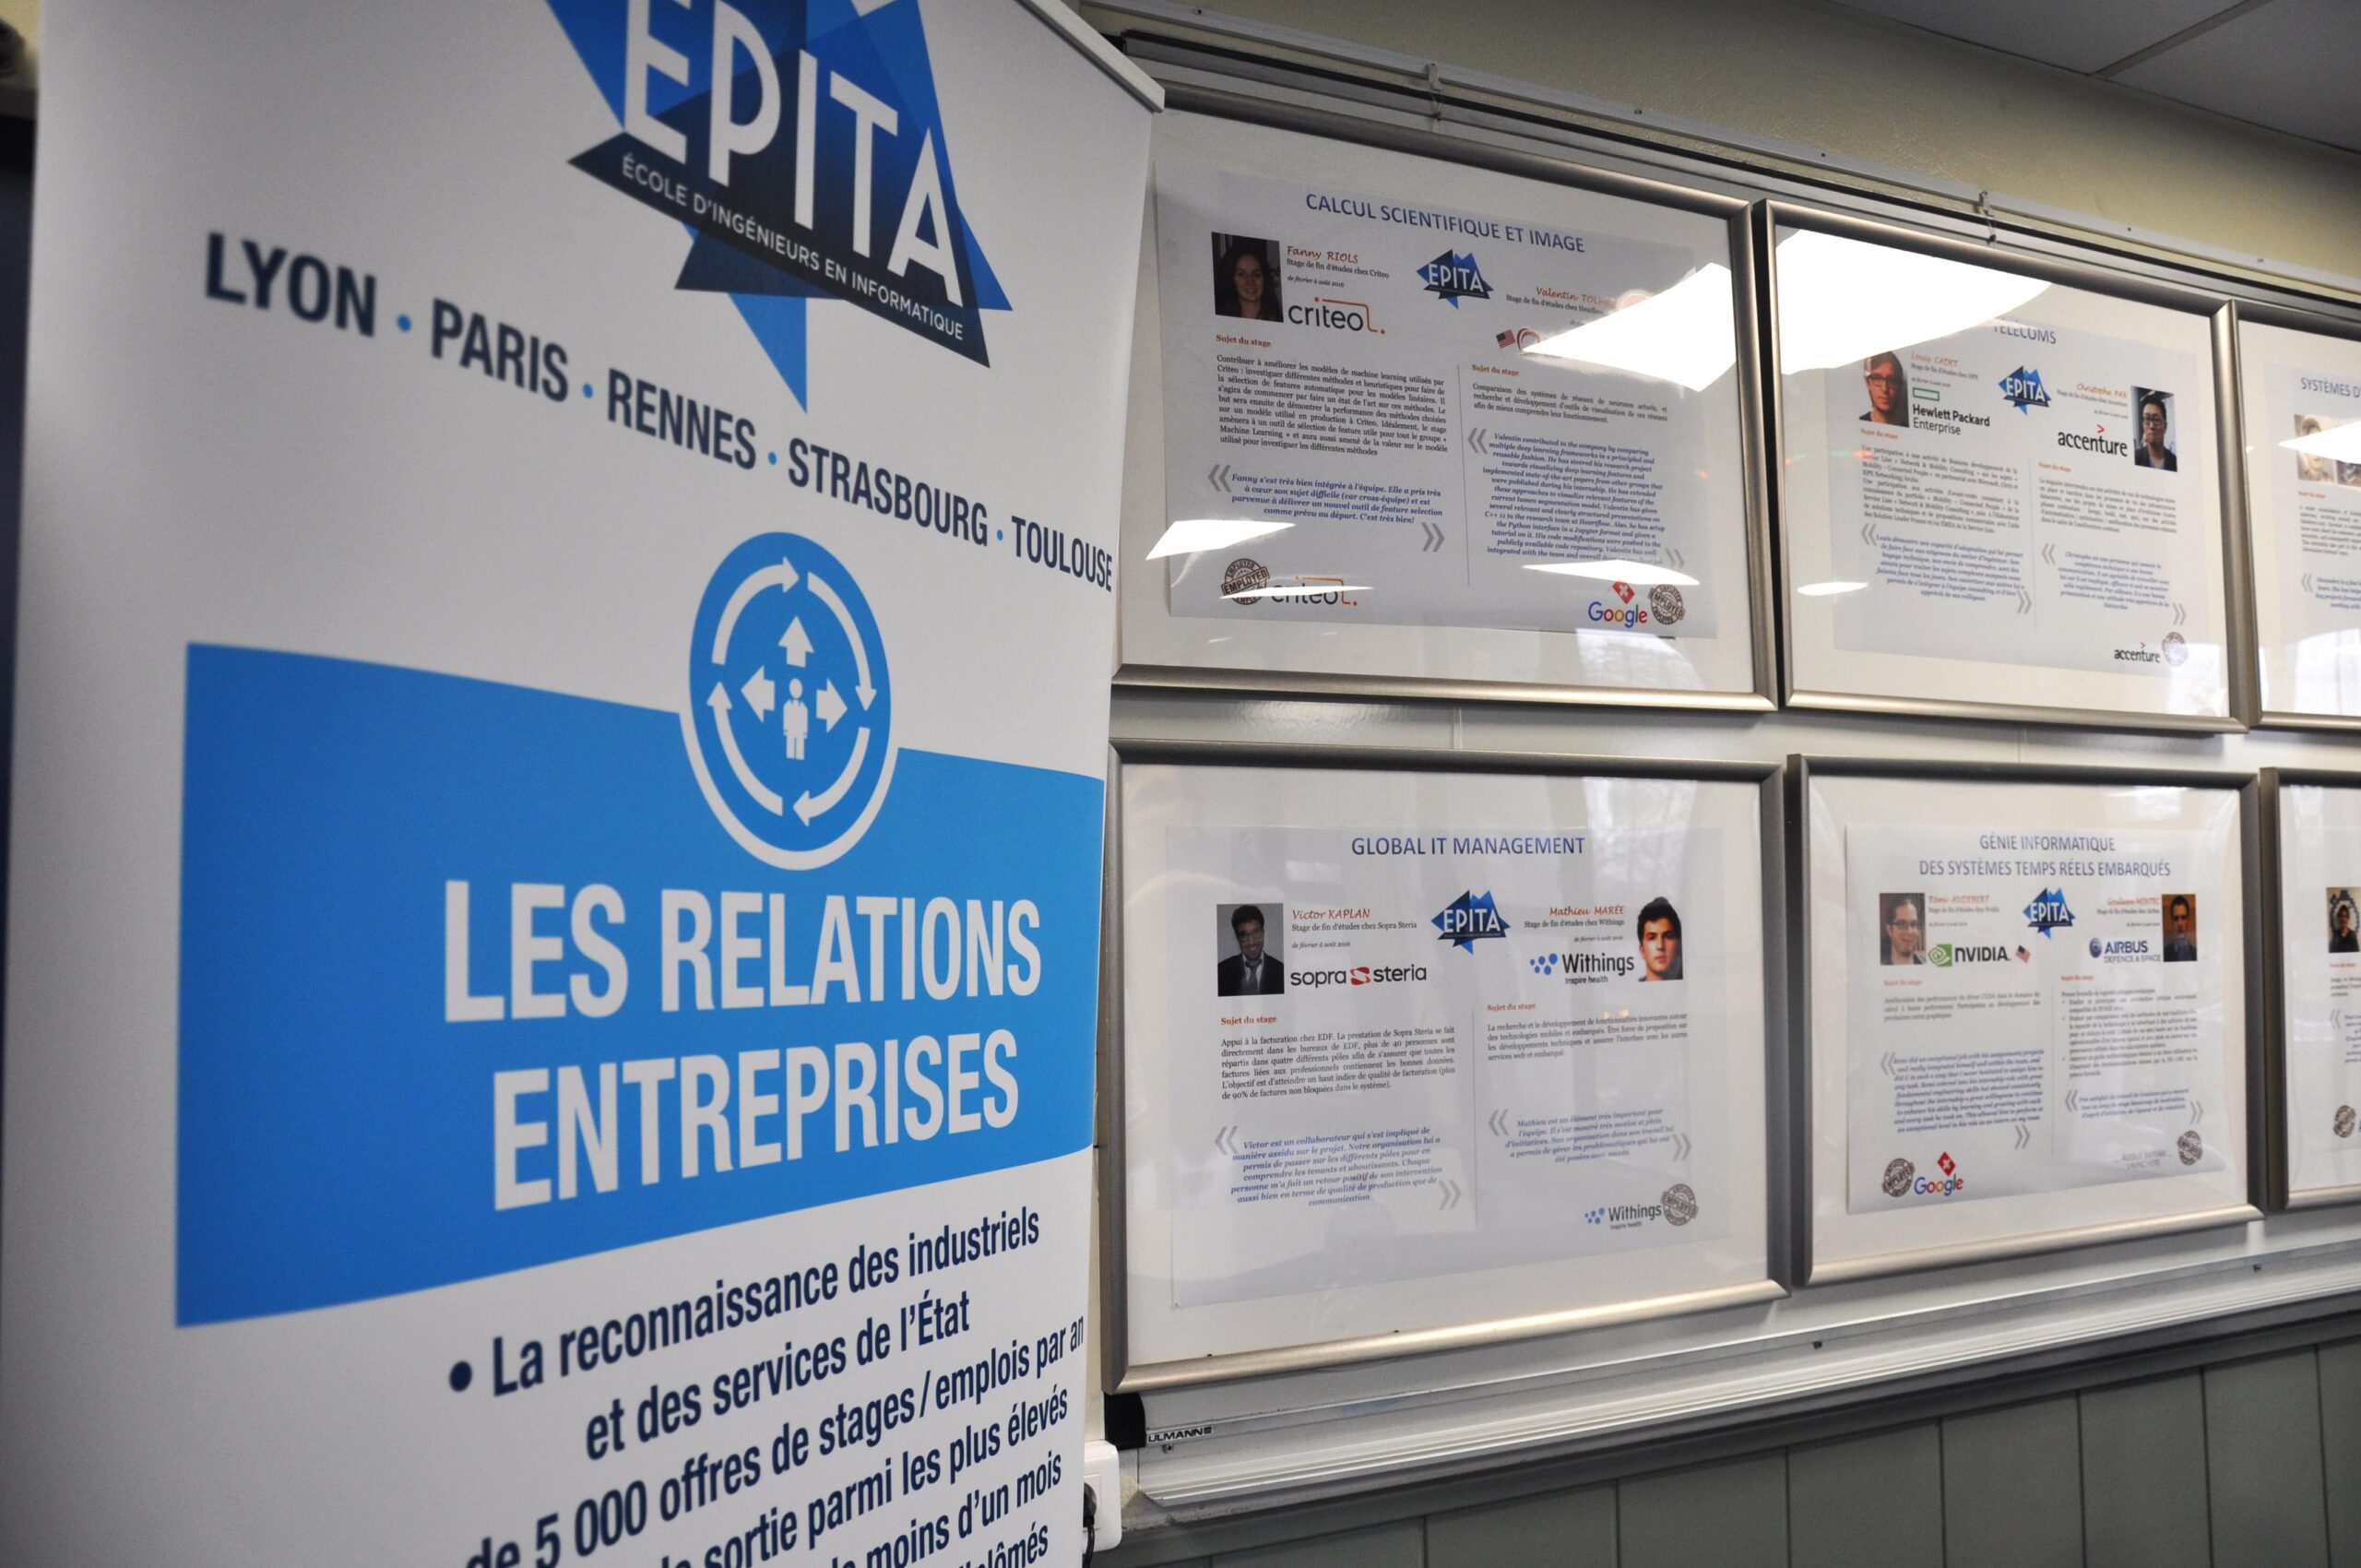 Les relations Entreprises à EPITA